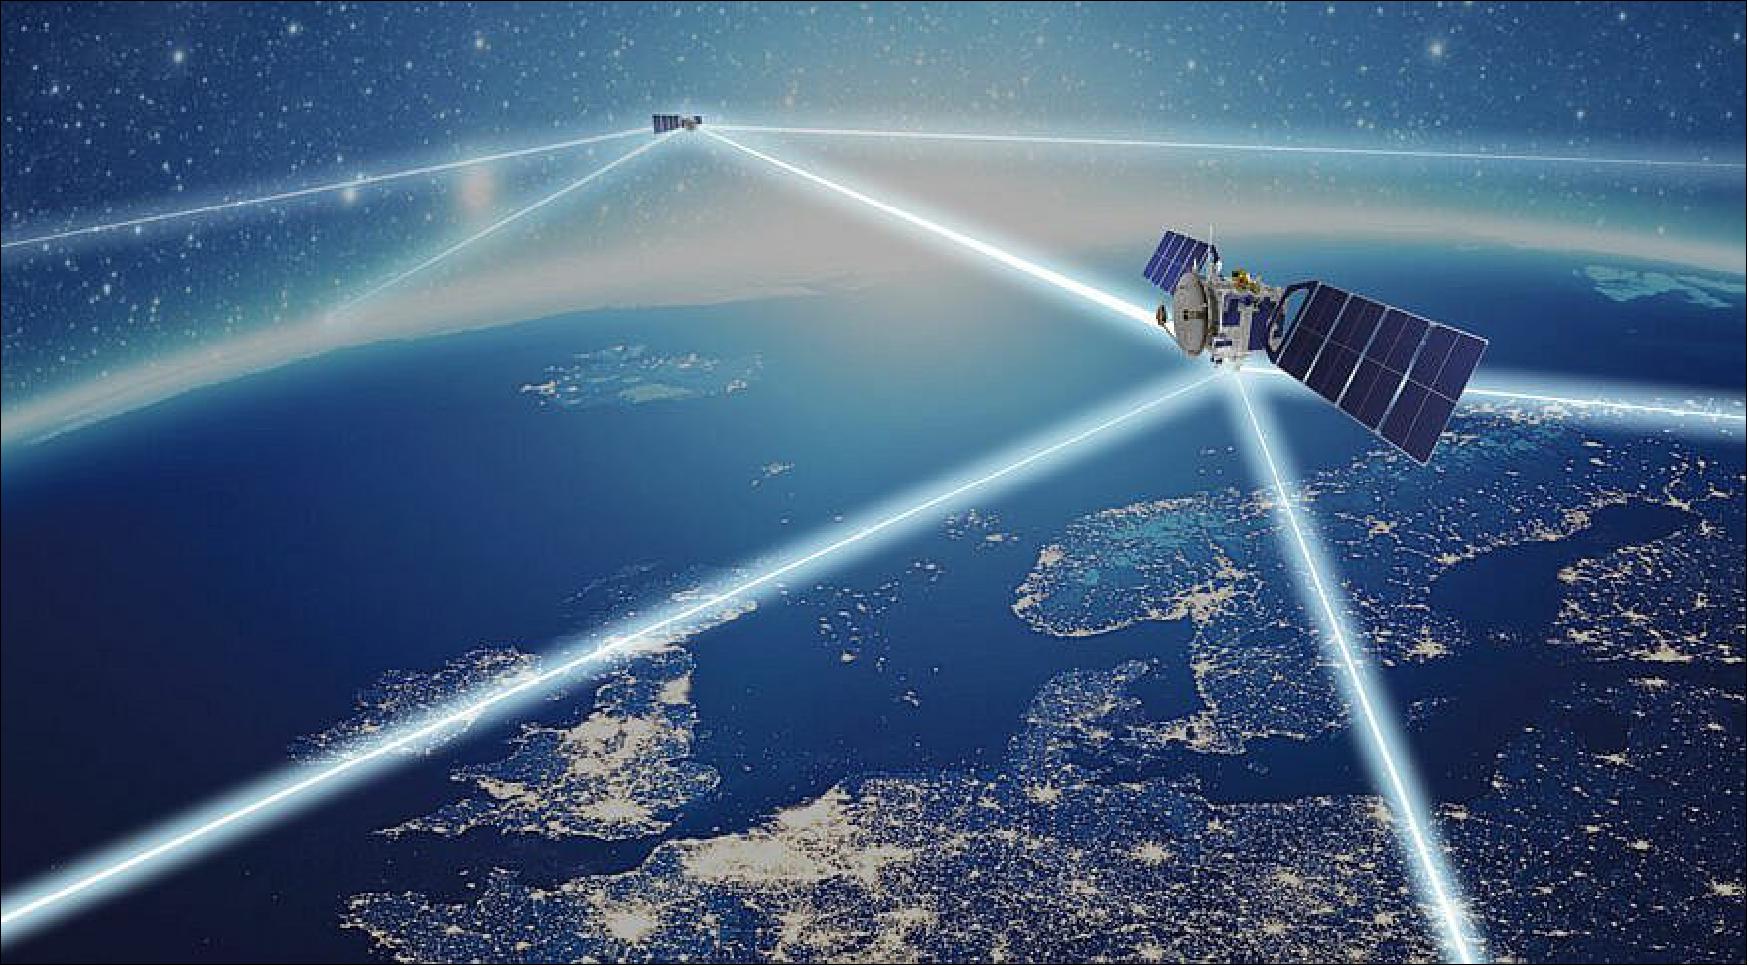 Figure 1: Tesat-Spacecom artist rendering of optical communications in space (image credit: Tesat-Spacecom)